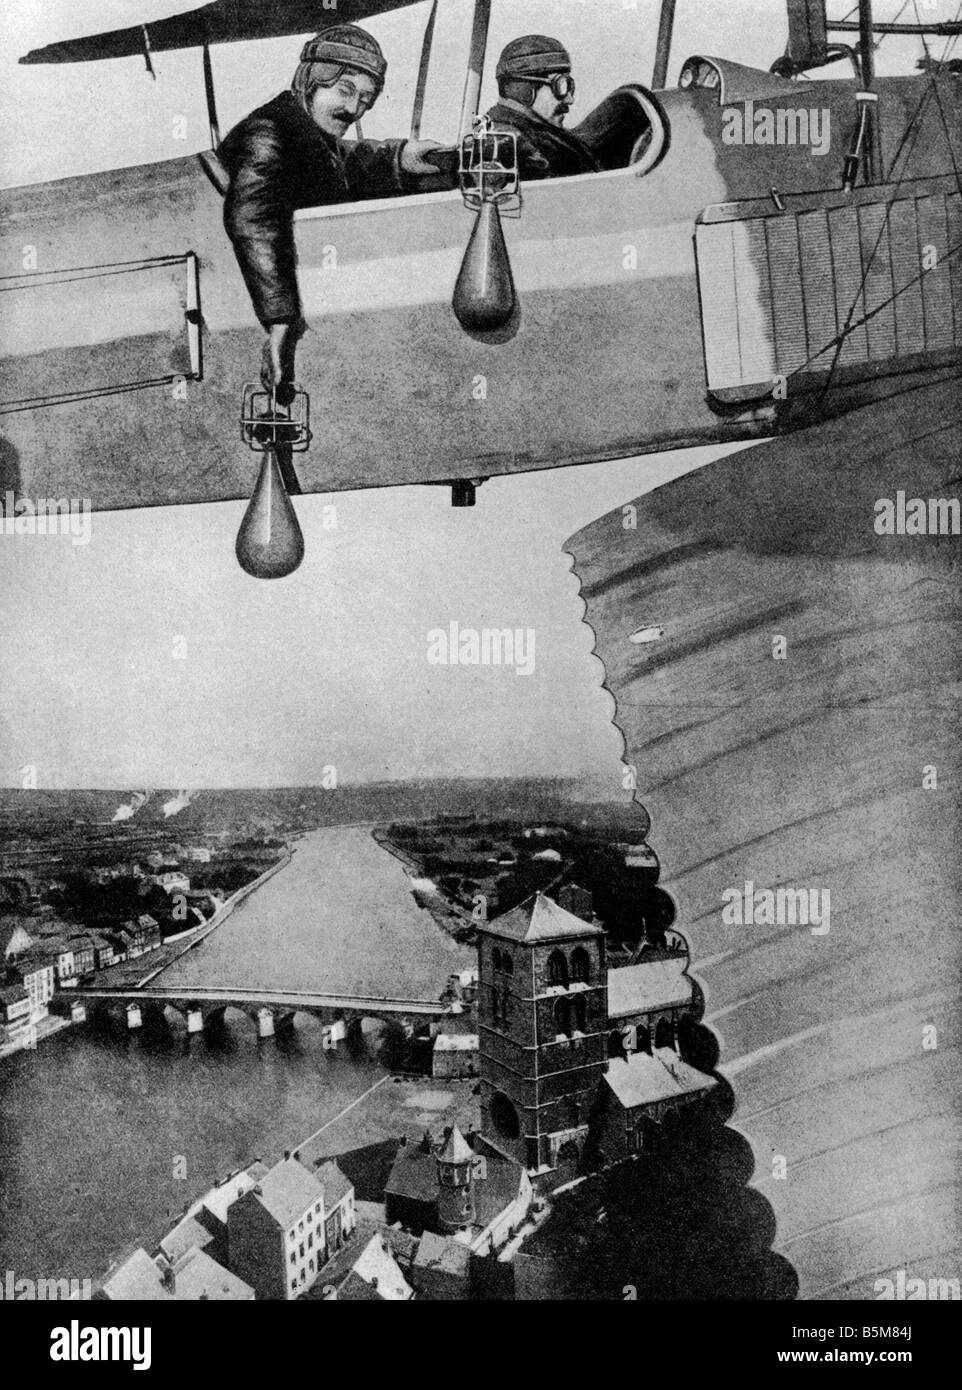 2 G55 B1 1914 3 aviatori Bombe cadenti Montage WWI storia la Prima Guerra Mondiale la guerra aerea aviatori Bombe cadenti Montage c 1914 Foto Stock